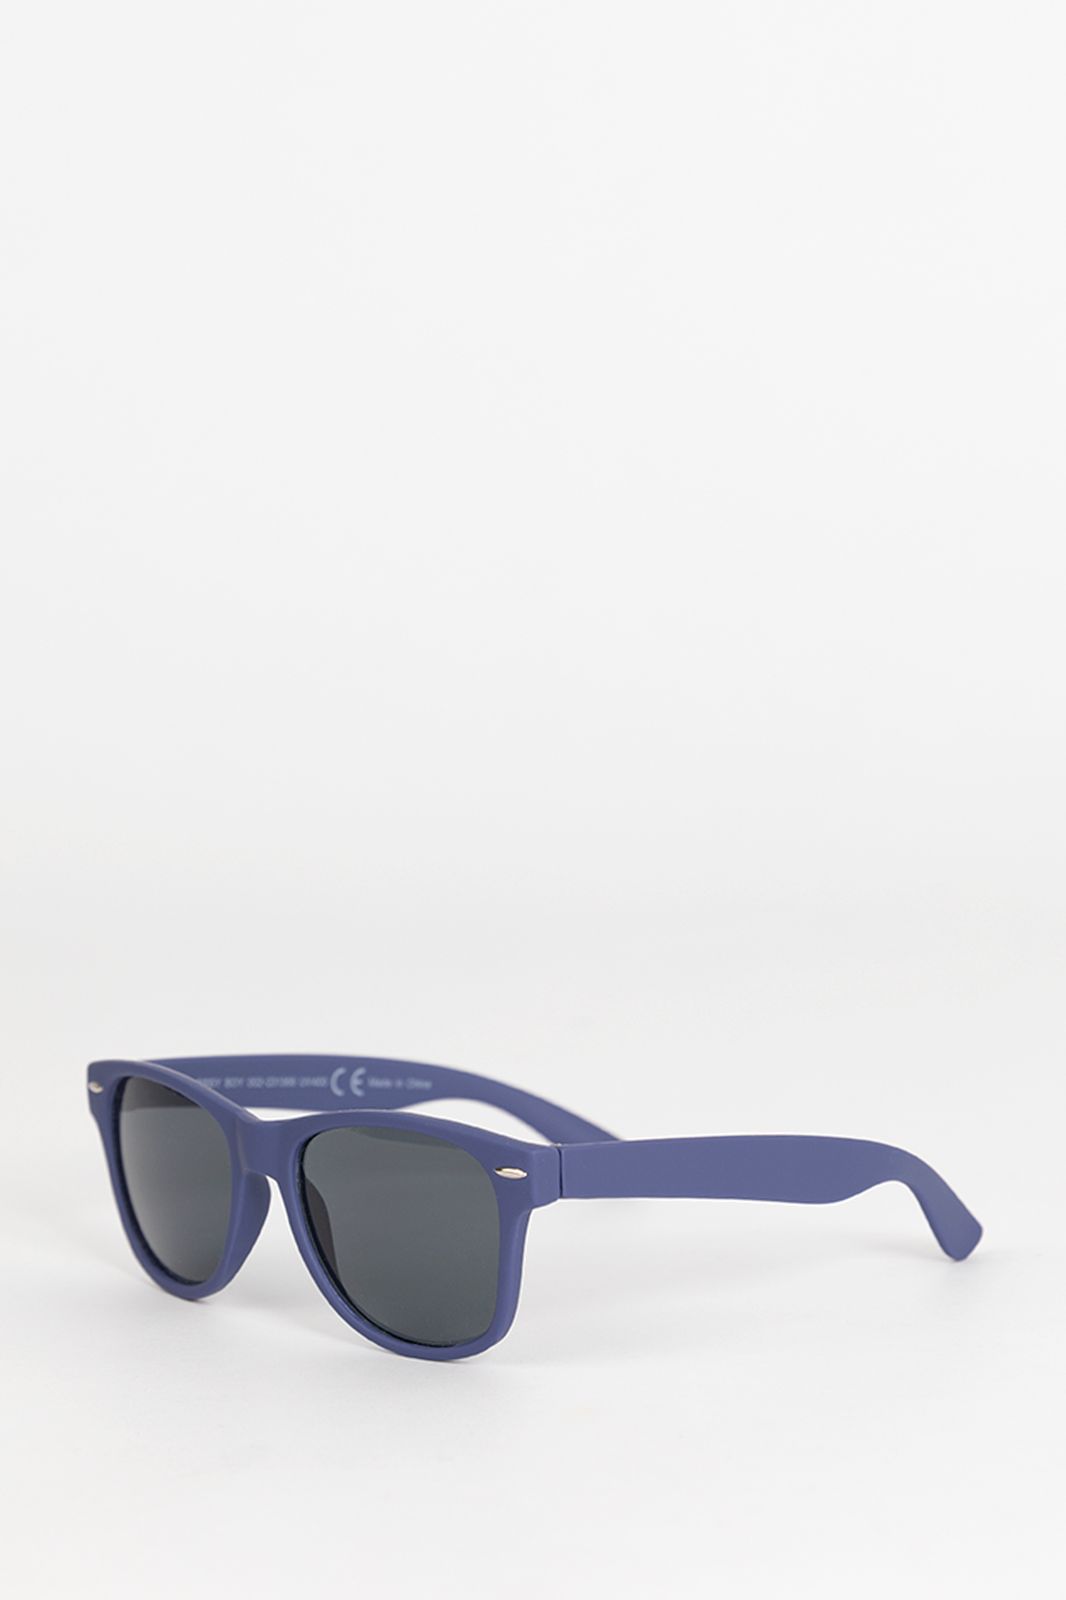 Clubmaster-Sonnenbrille - dunkelblau